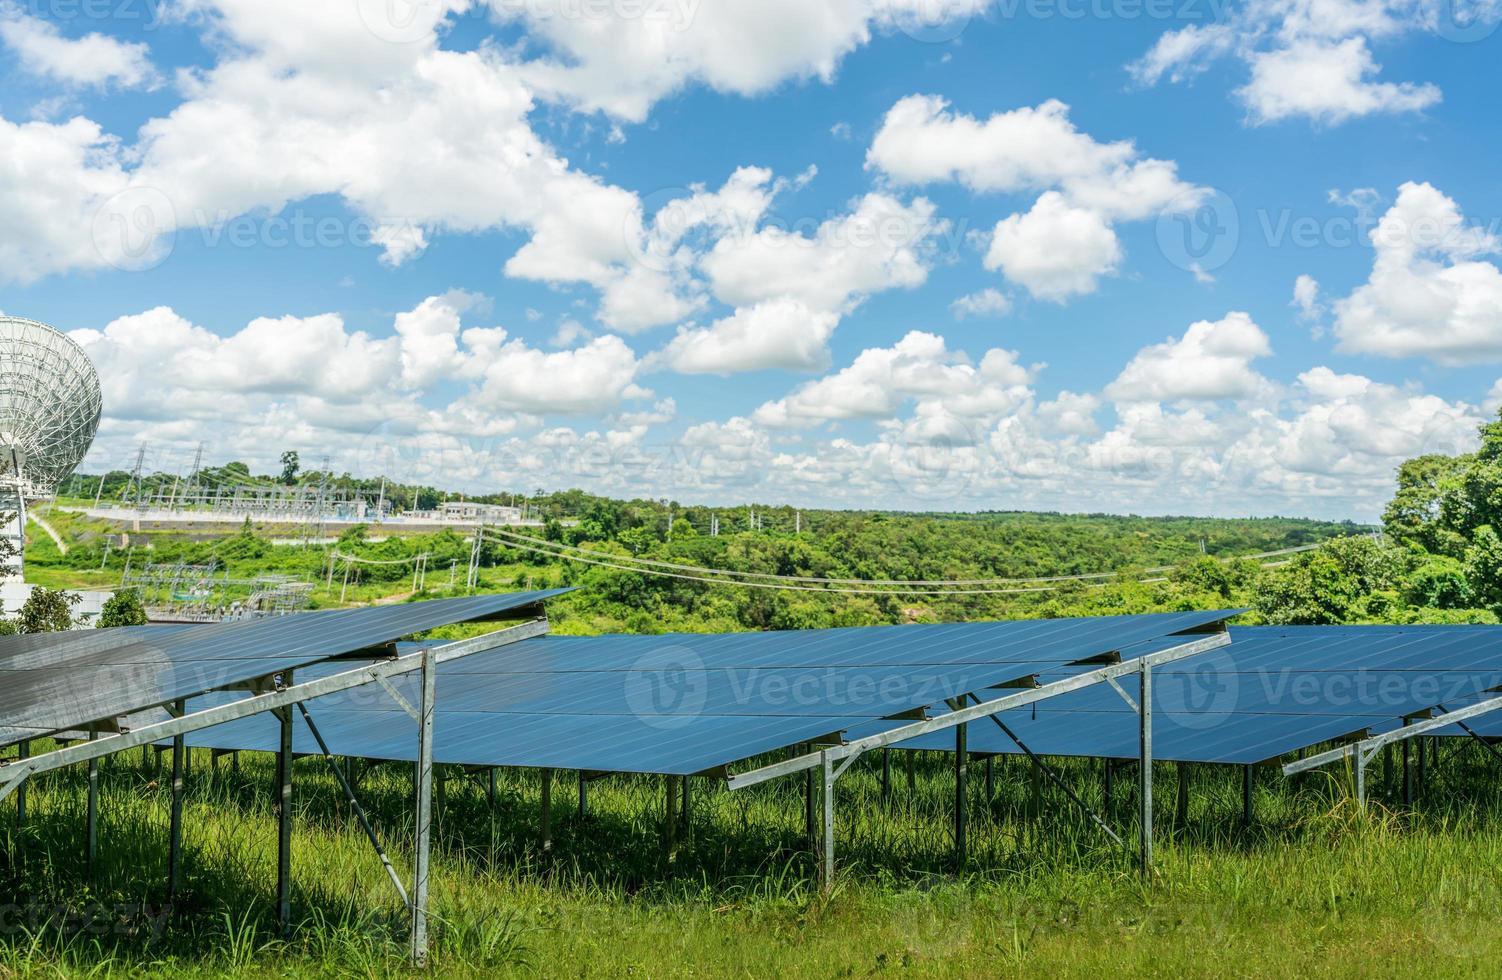 Photovoltaikkraftwerk oder Solarpark. PV-Anlage. Solarpark und grüne Wiese. Solarstrom für grüne Energie. Photovoltaik-Kraftwerk erzeugt Sonnenenergie. saubere Energie. nachhaltige Ressourcen. foto